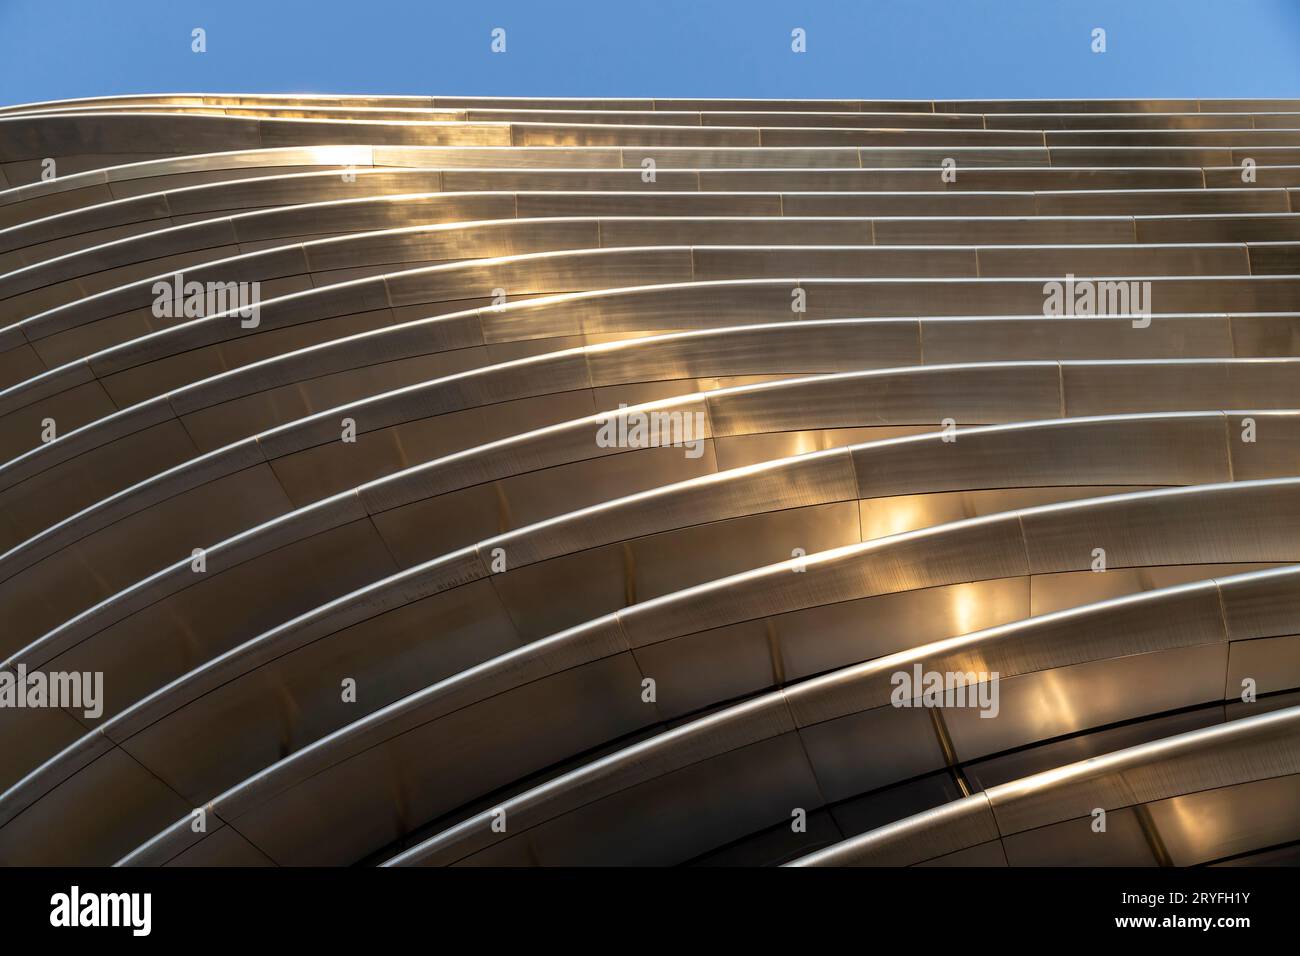 Dubai, VAE - 15. November 2021: Mobilitätspavillon-Fassade, abstrakte Außenstruktur in moderner Architektur Stockfoto